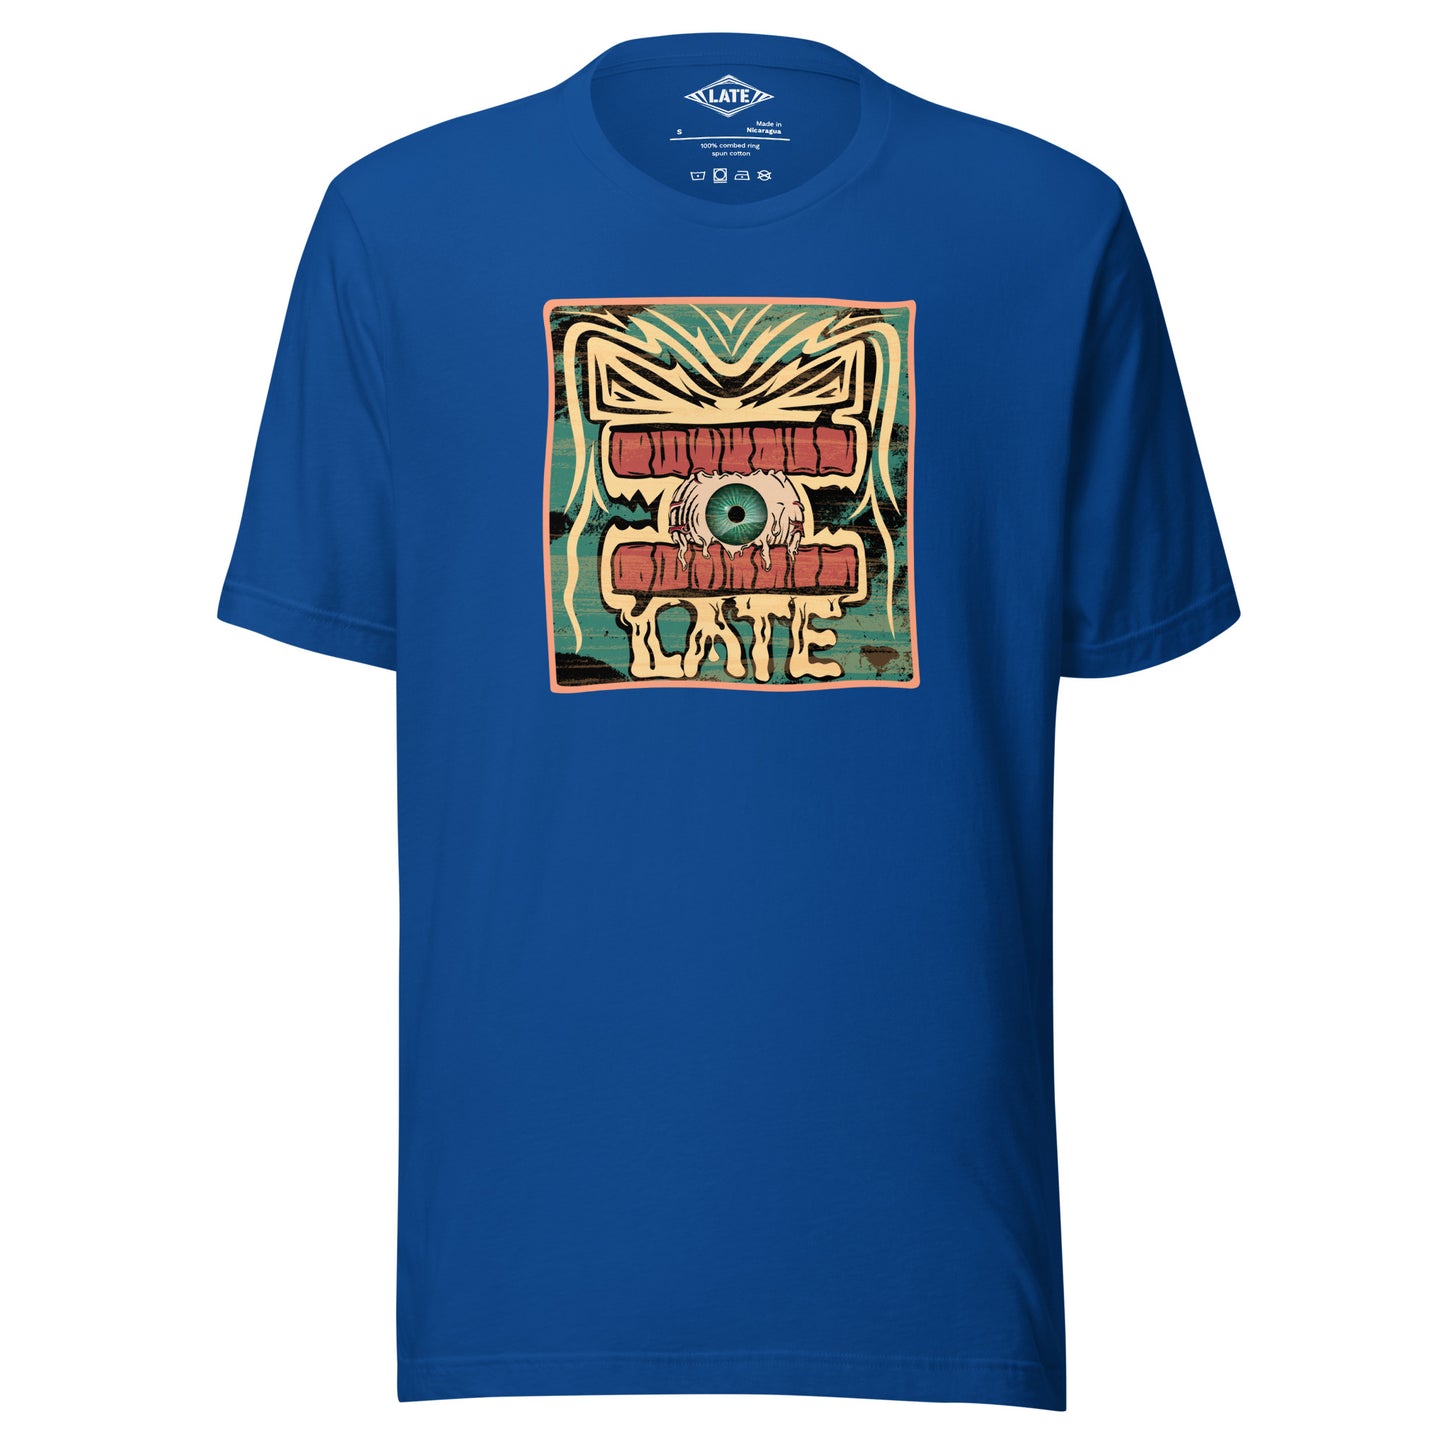 T-shirt rétro skateboarding, design couleur délavée, années 70,80, original dent et oeil skate, tee-shirt unisexe bleu